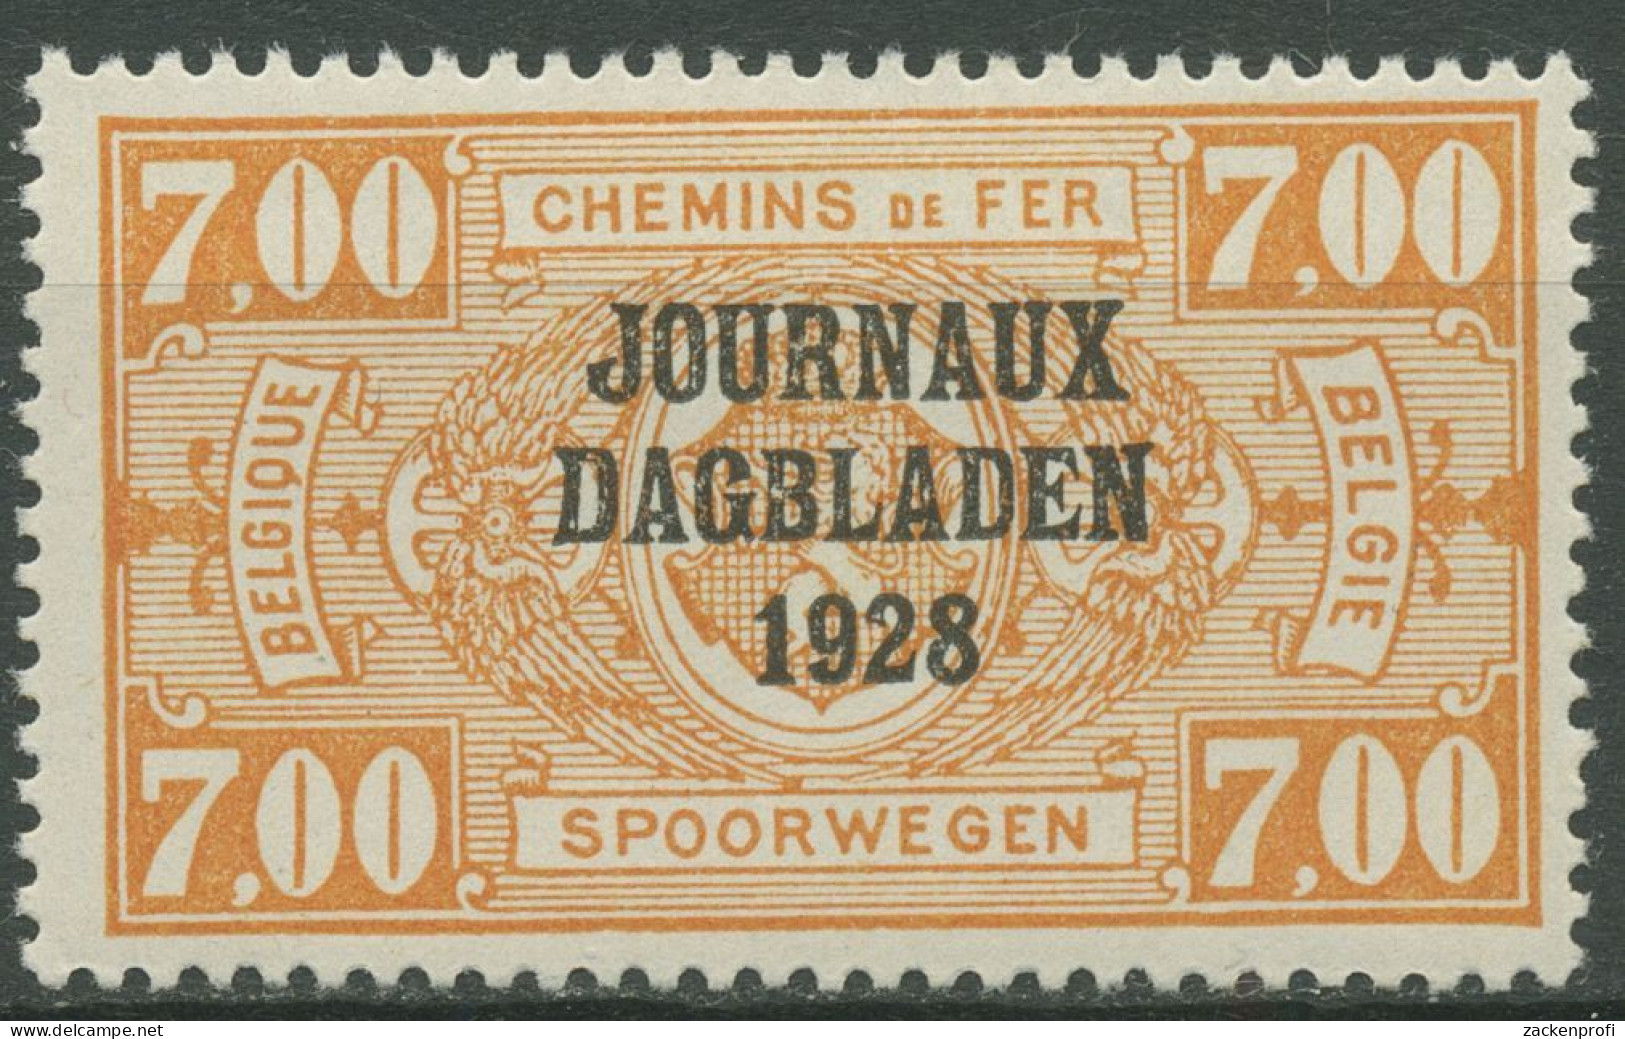 Belgien 1928 Zeitungspaketmarke Mit Aufdruck ZP 15 Mit Falz - Giornali [JO]